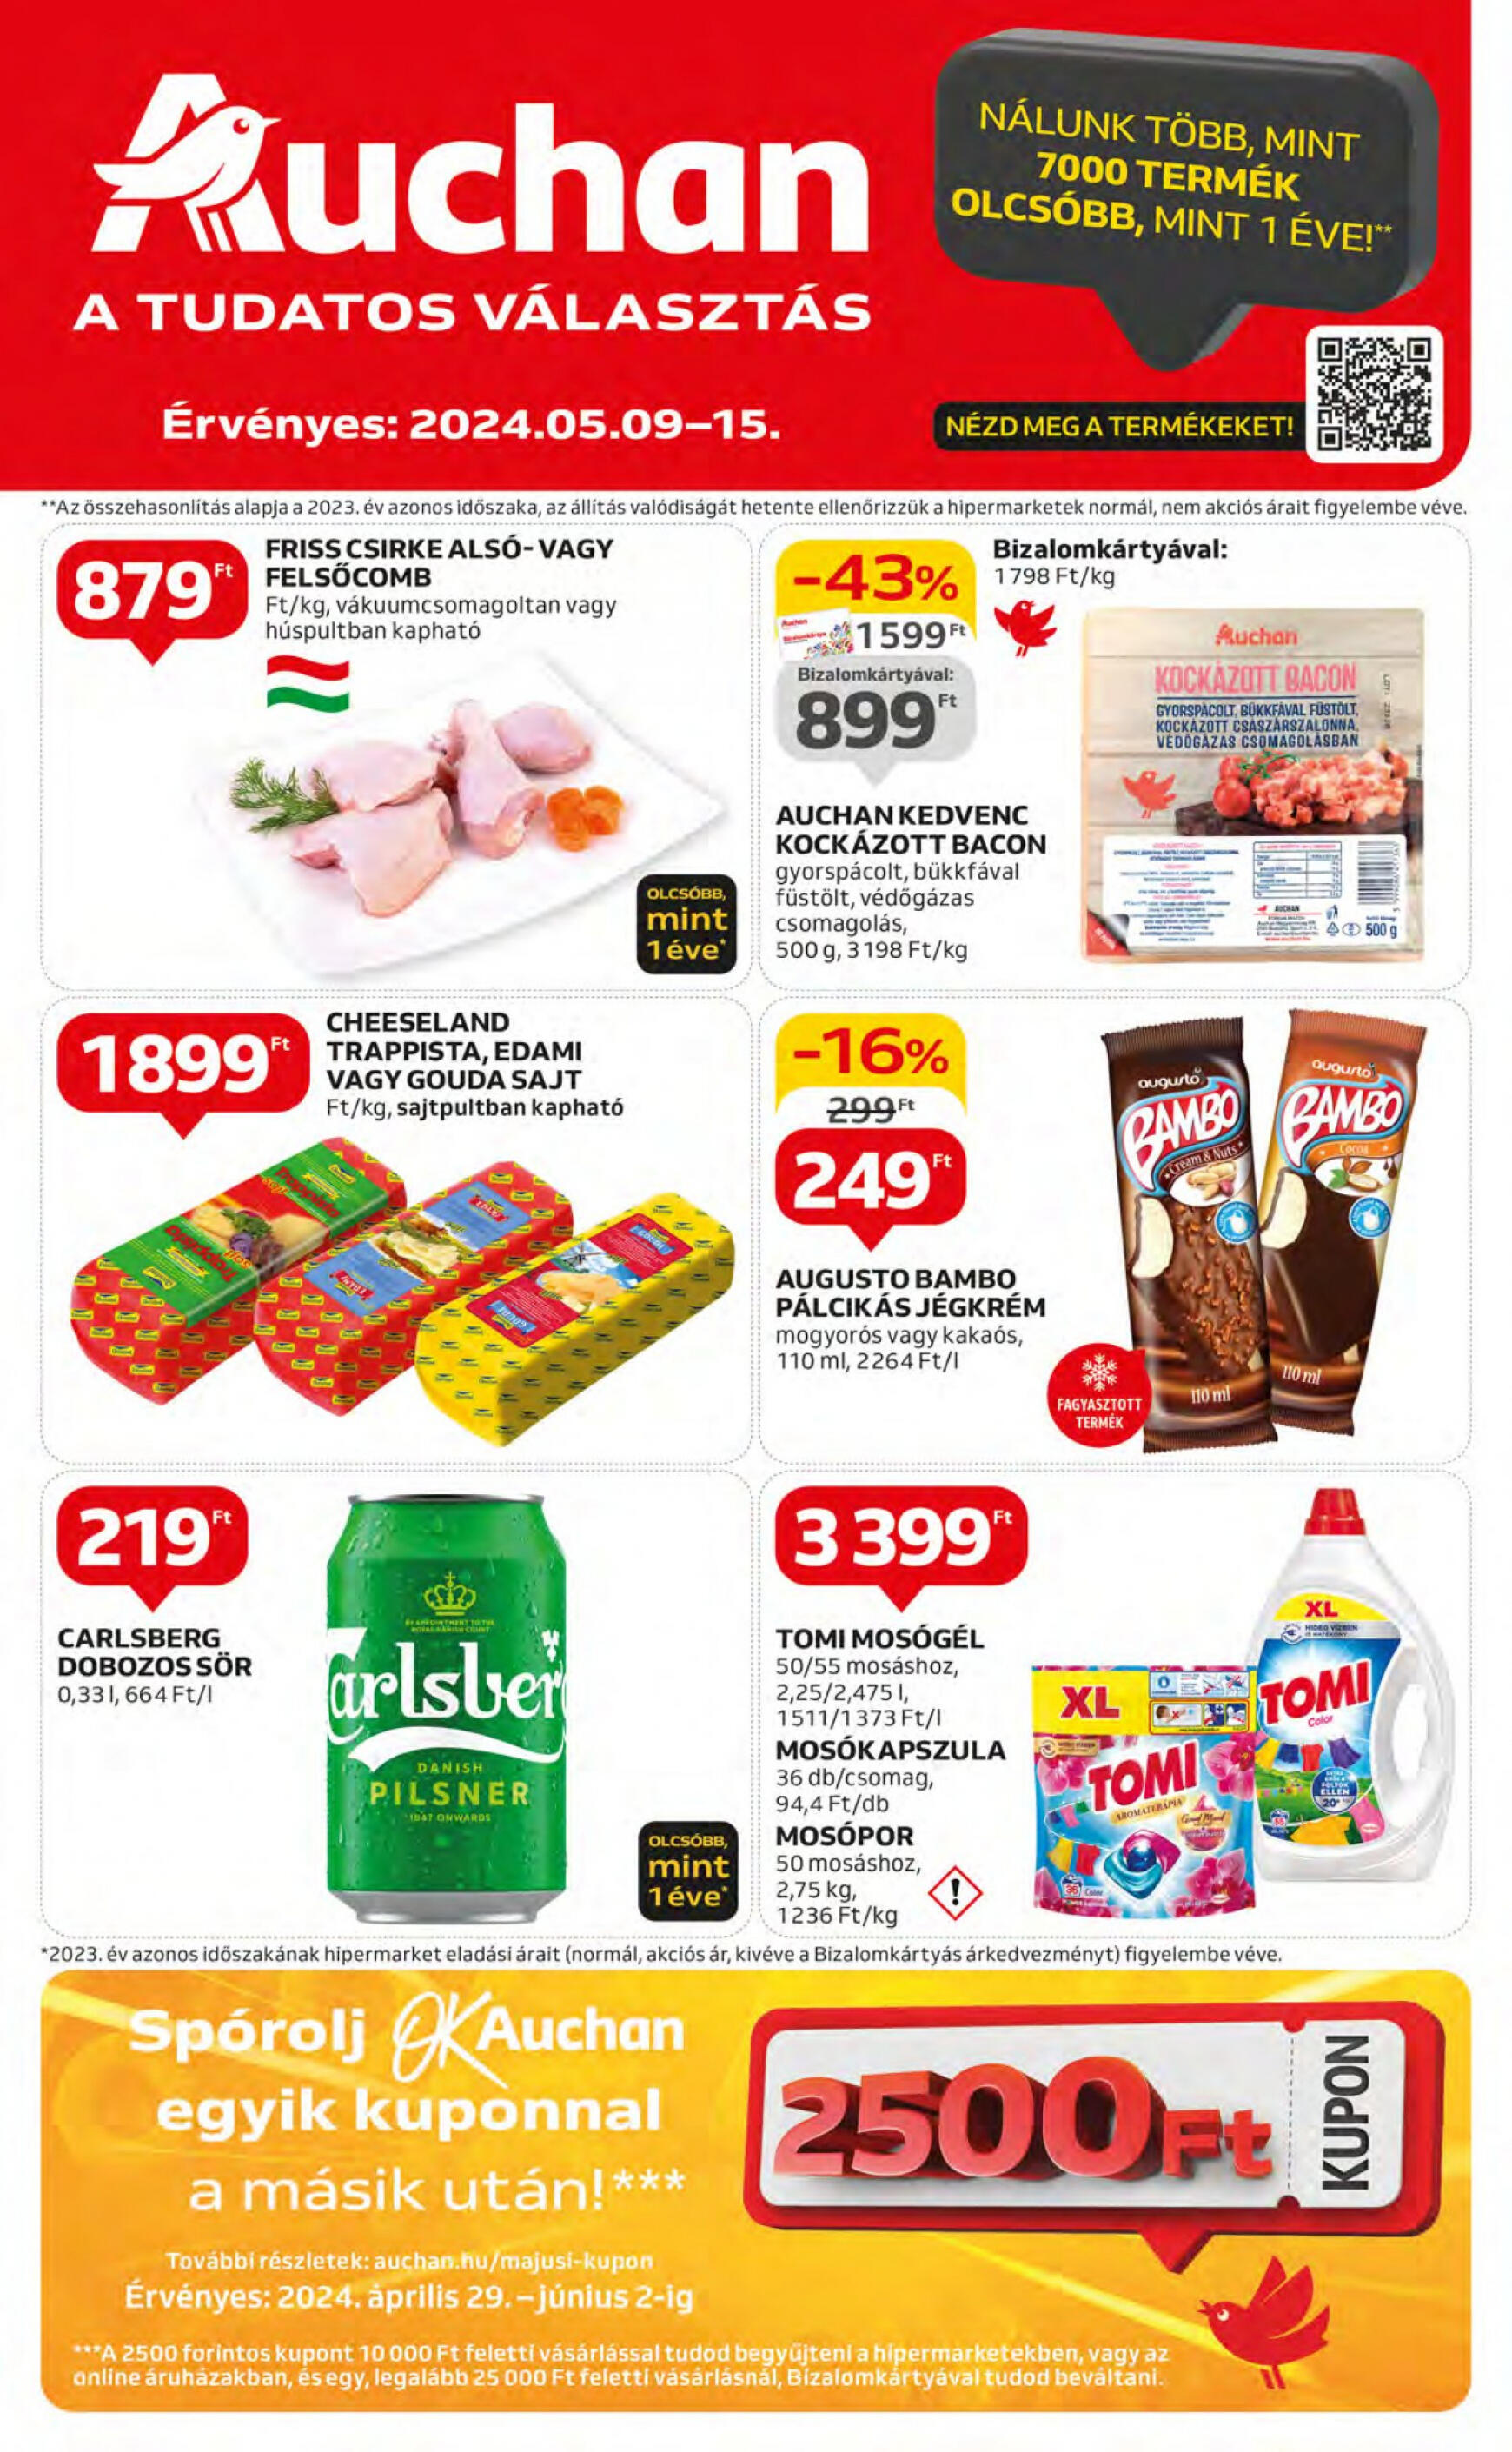 auchan - Aktuális újság Auchan 05.09. - 05.15.